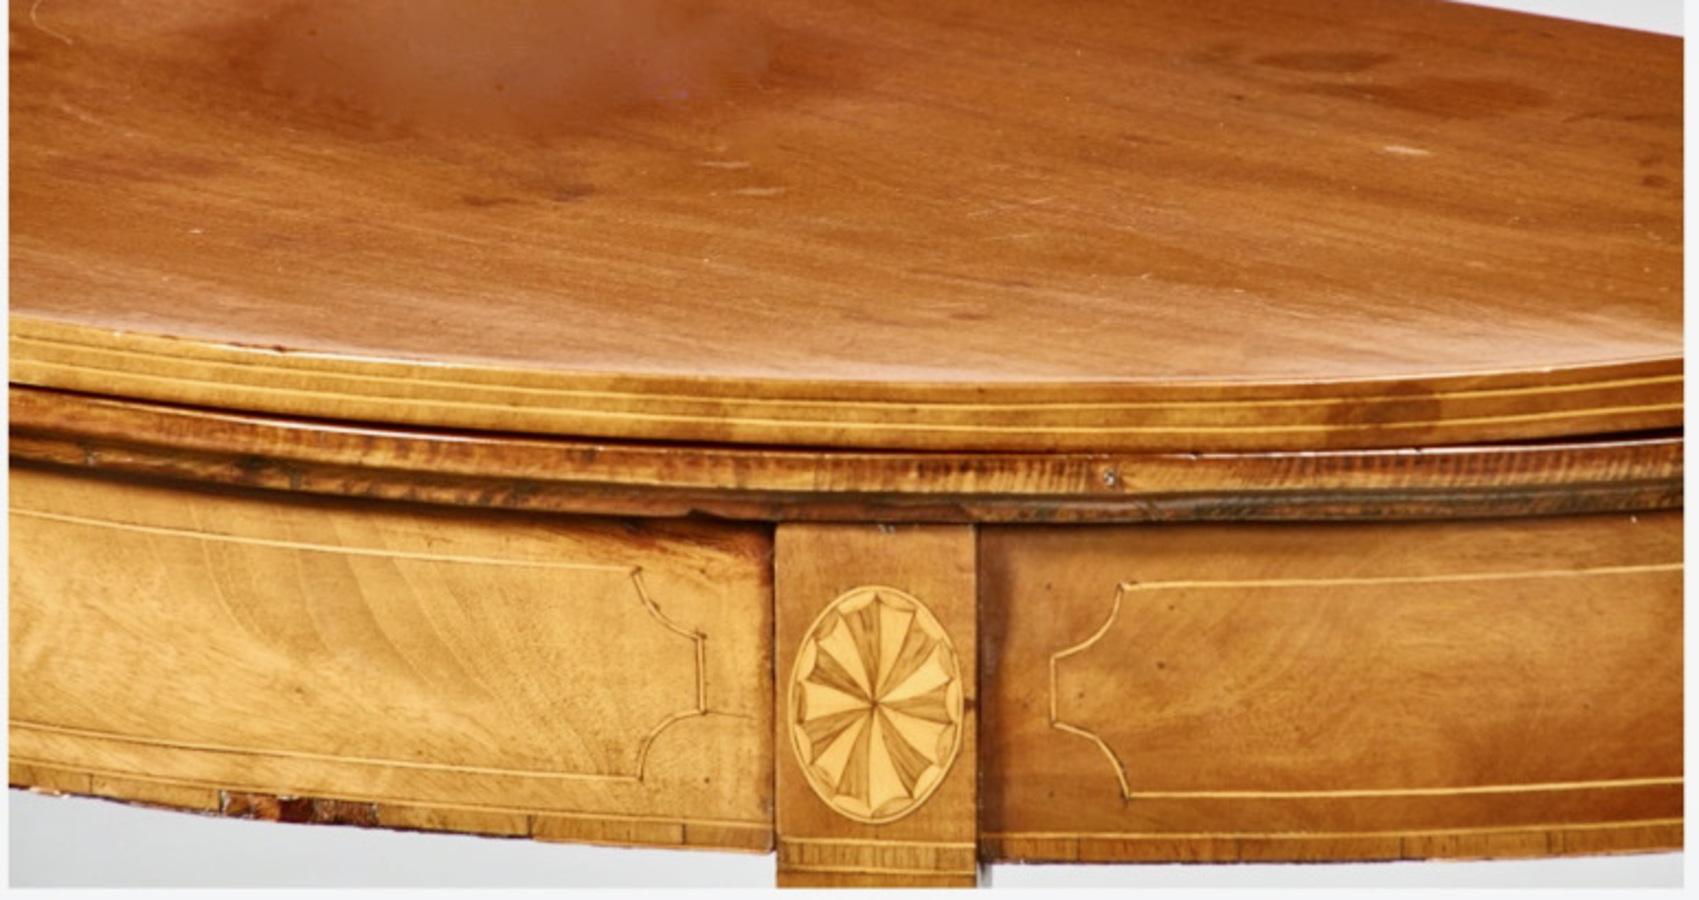 Dies ist ein gutes Beispiel für einen Mahagoni-Tisch aus dem späten 18. Jahrhundert. Der Tisch verfügt über eine Satinholzeinlage, eine massive Mahagoni-Klappplatte, eingelegte Paterae an allen vier Beinen und eine Linieneinlage an der Schürze und